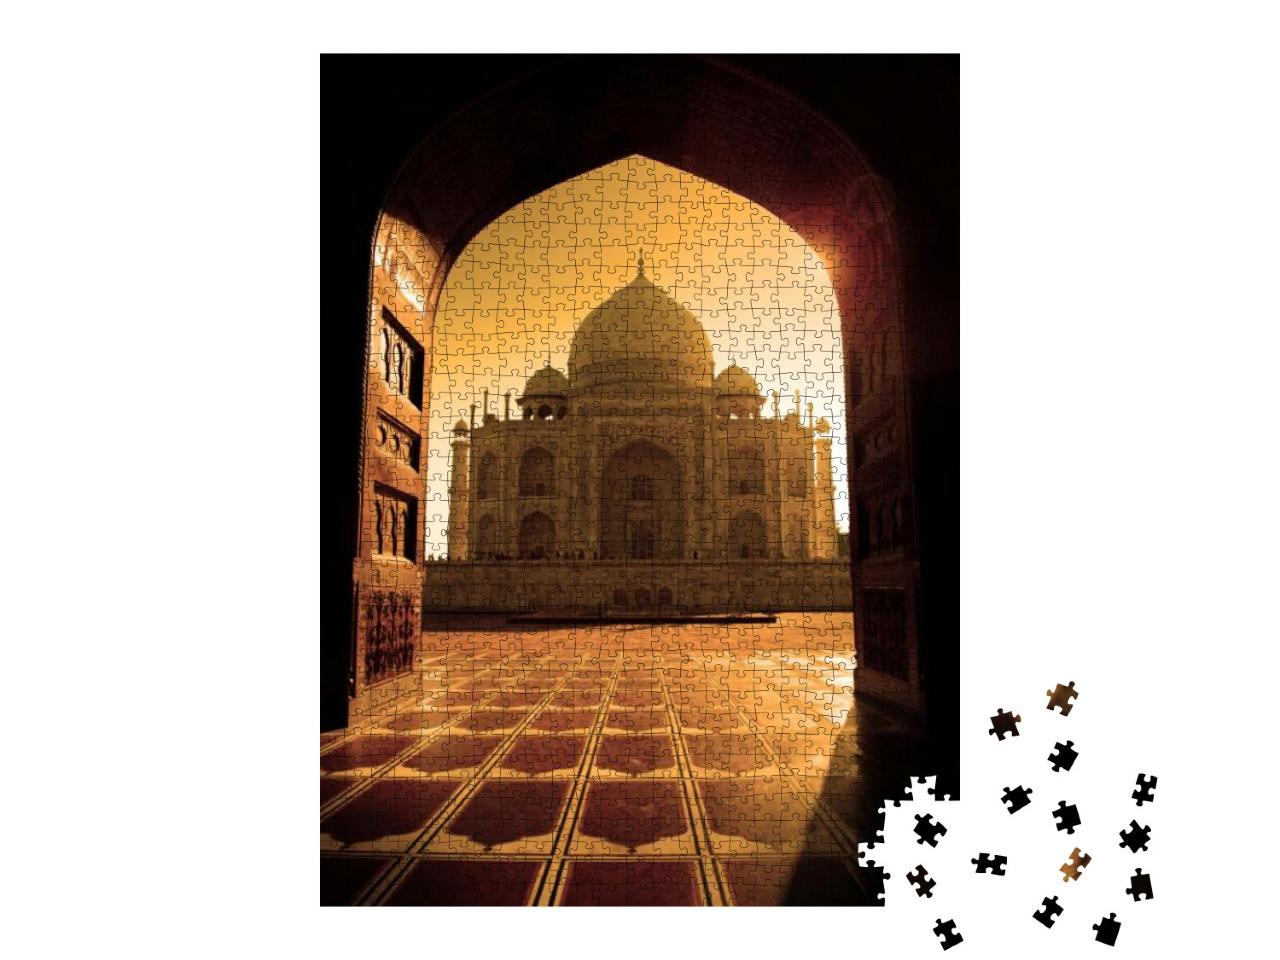 Puzzle 1000 Teile „Taj Mahal im Sonnenlicht “